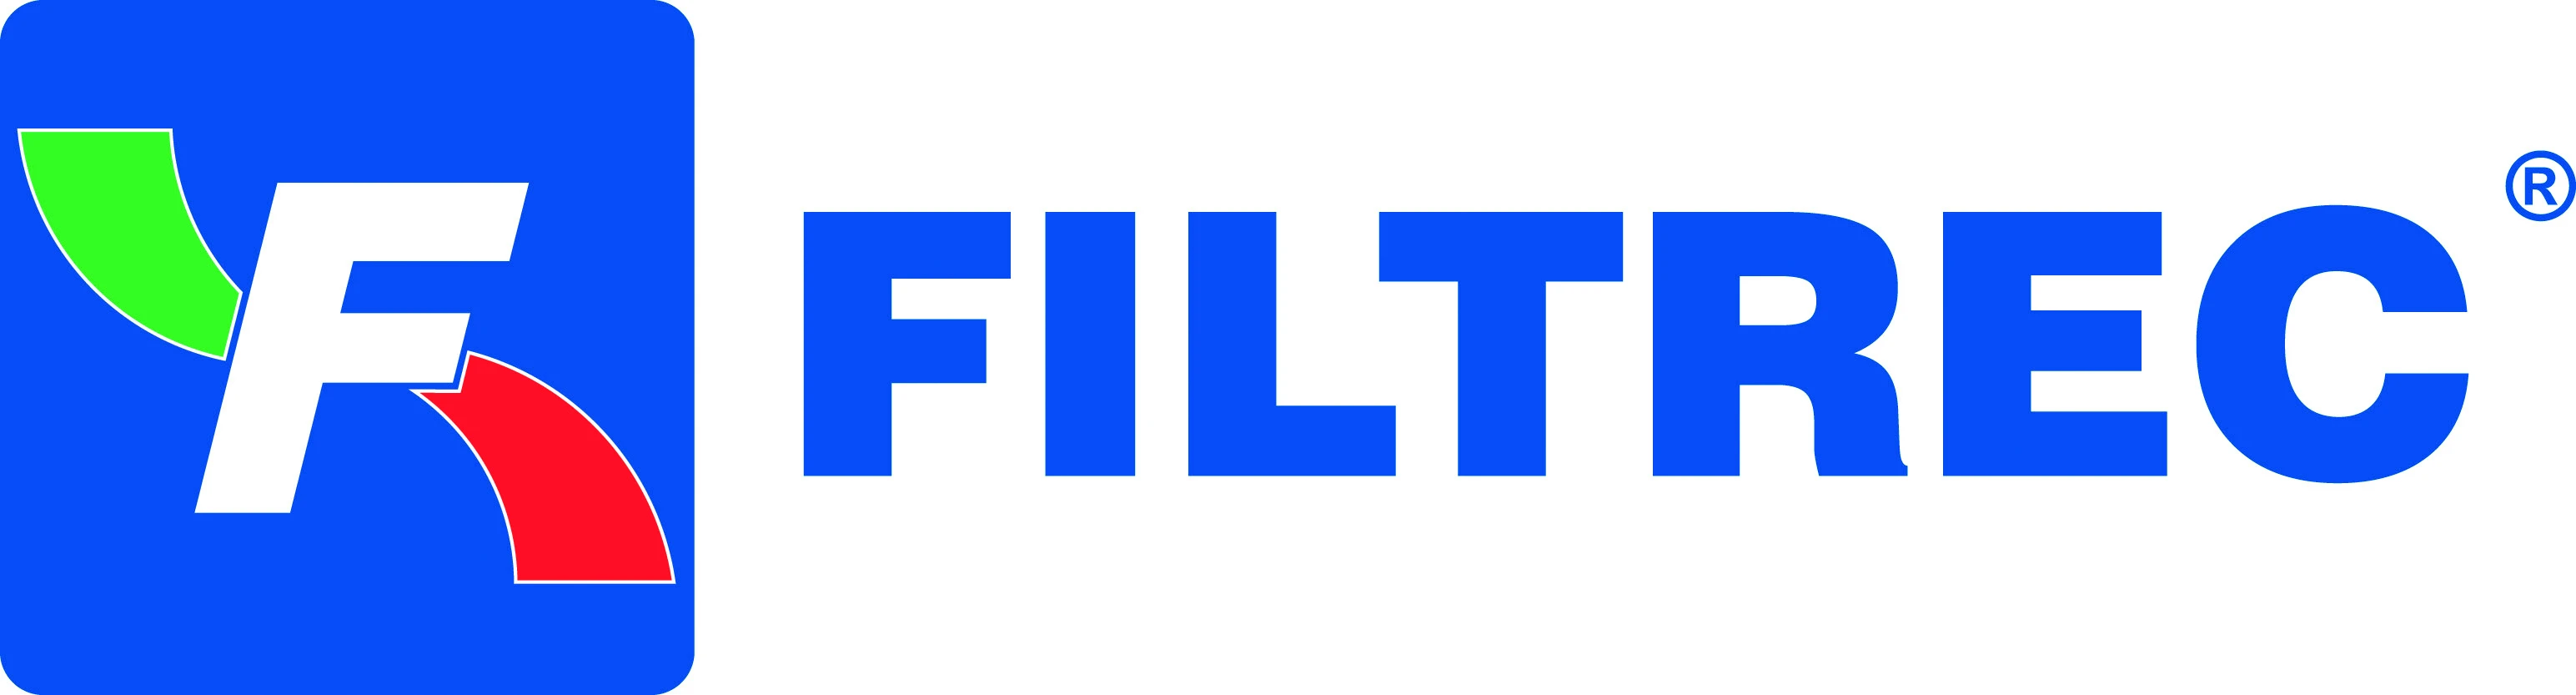 677-filtrec-logo-169322687483.jpg